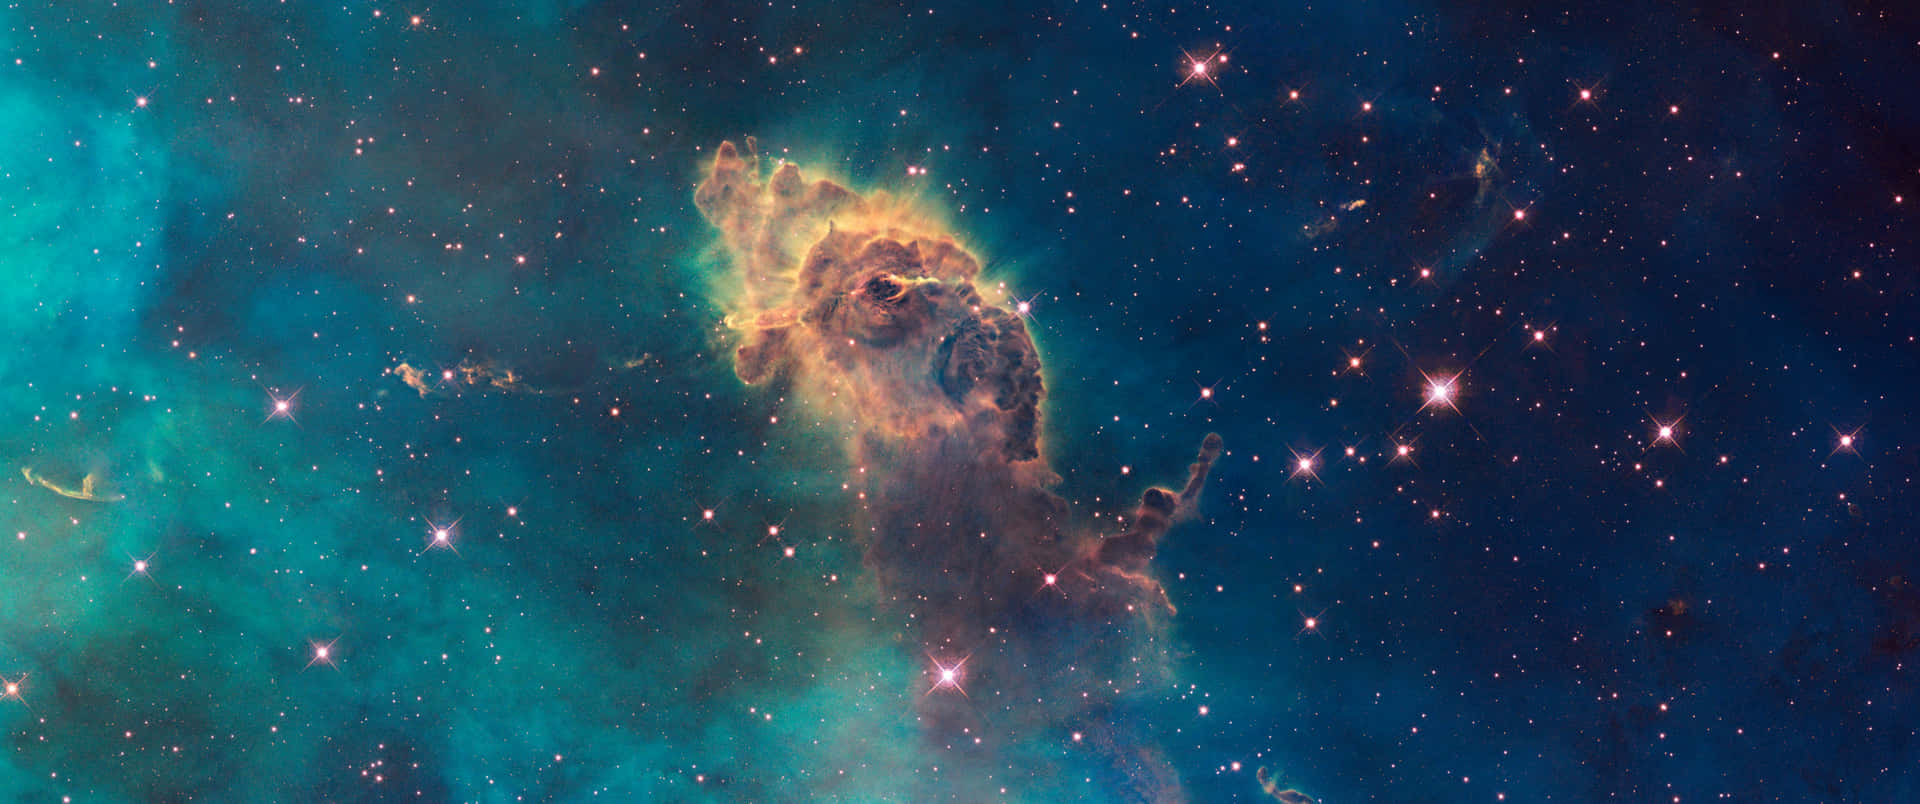 Enblå Och Grön Nebulosa Med Stjärnor I Bakgrunden Wallpaper